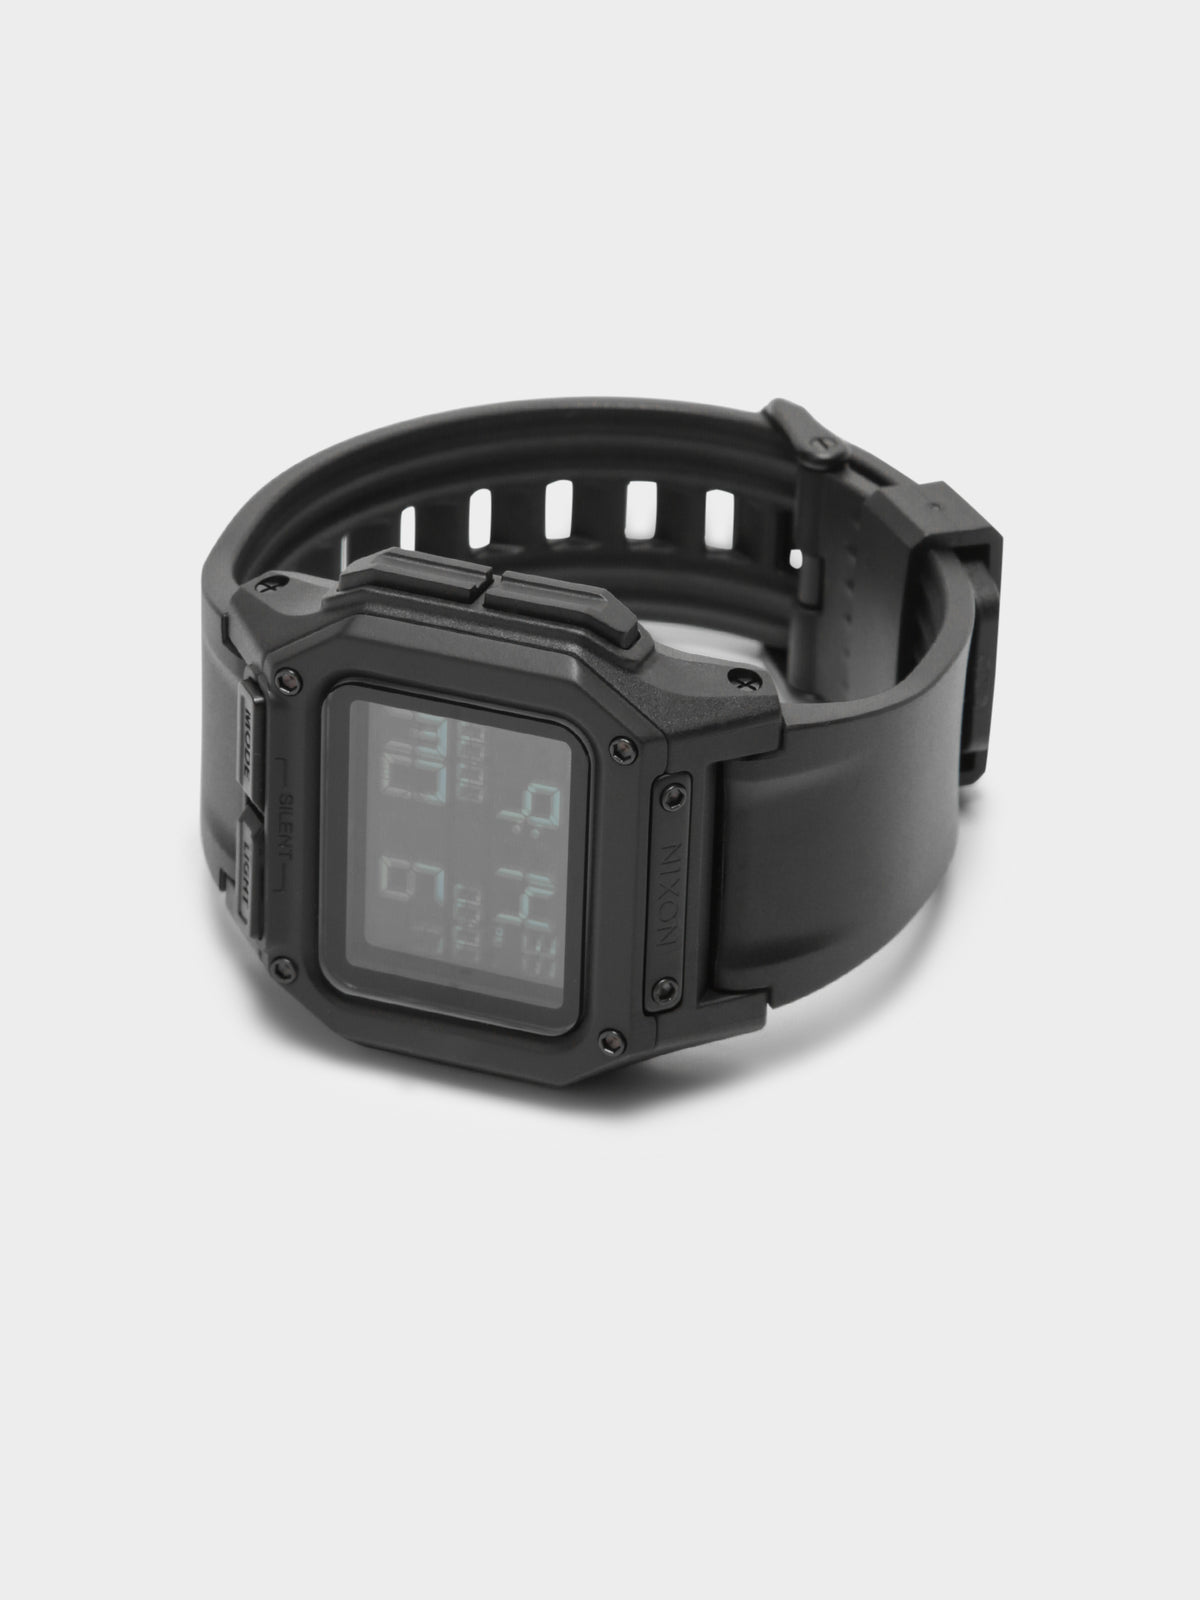 Regulus Digital Watch in Black